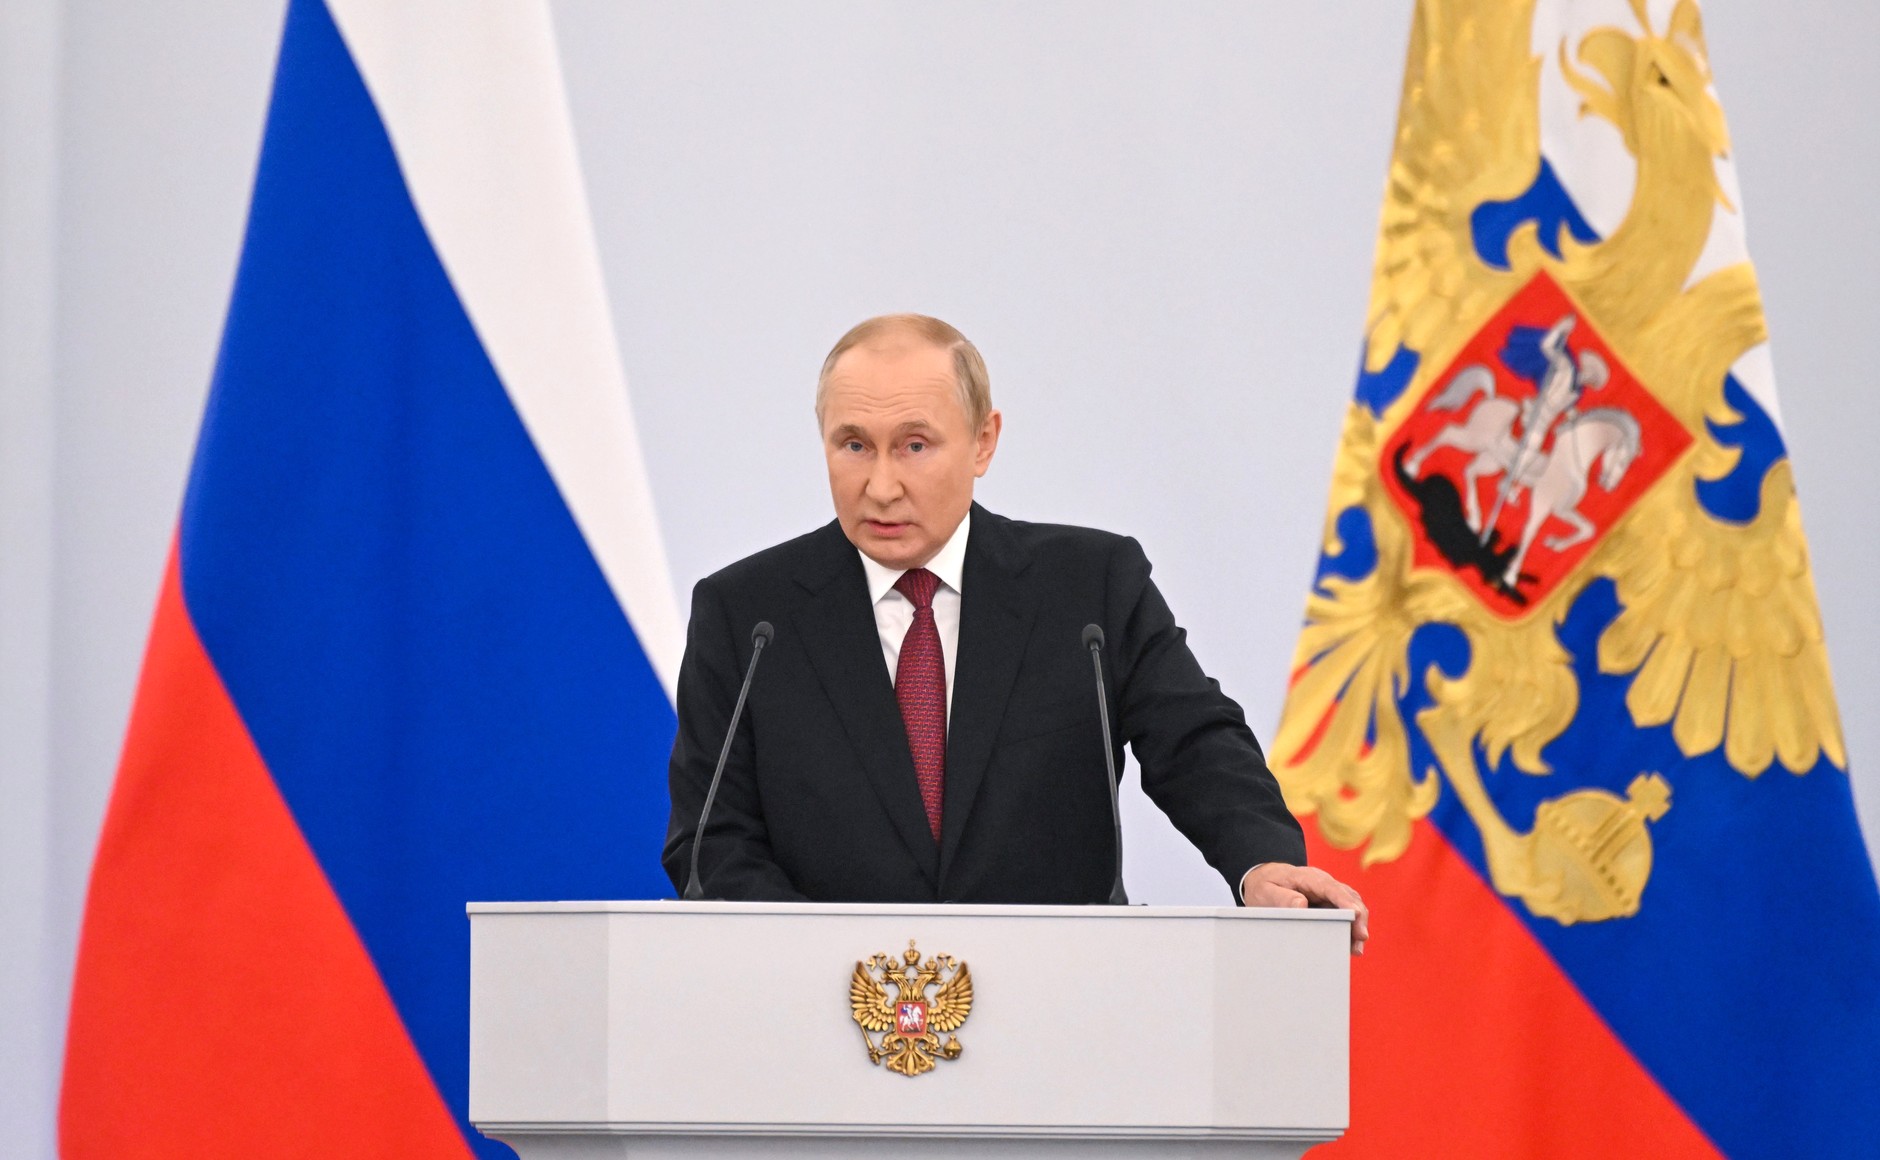 Ο Πούτιν υπέγραψε το διάταγμα για τον πυρηνικό σταθμό Ζαπορίζια